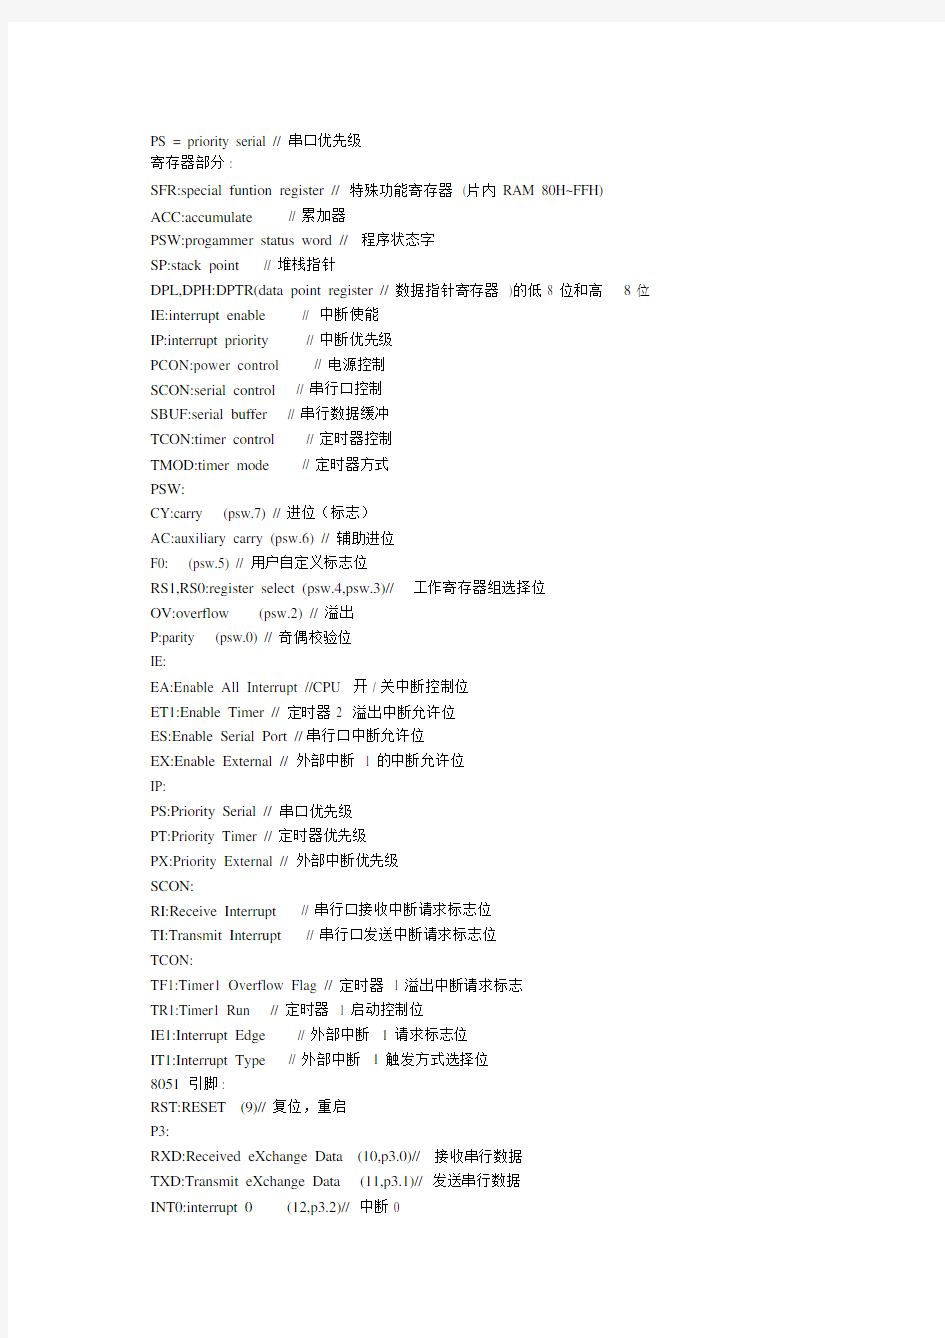 (完整版)单片机模块中的缩写英文及中文全称.doc